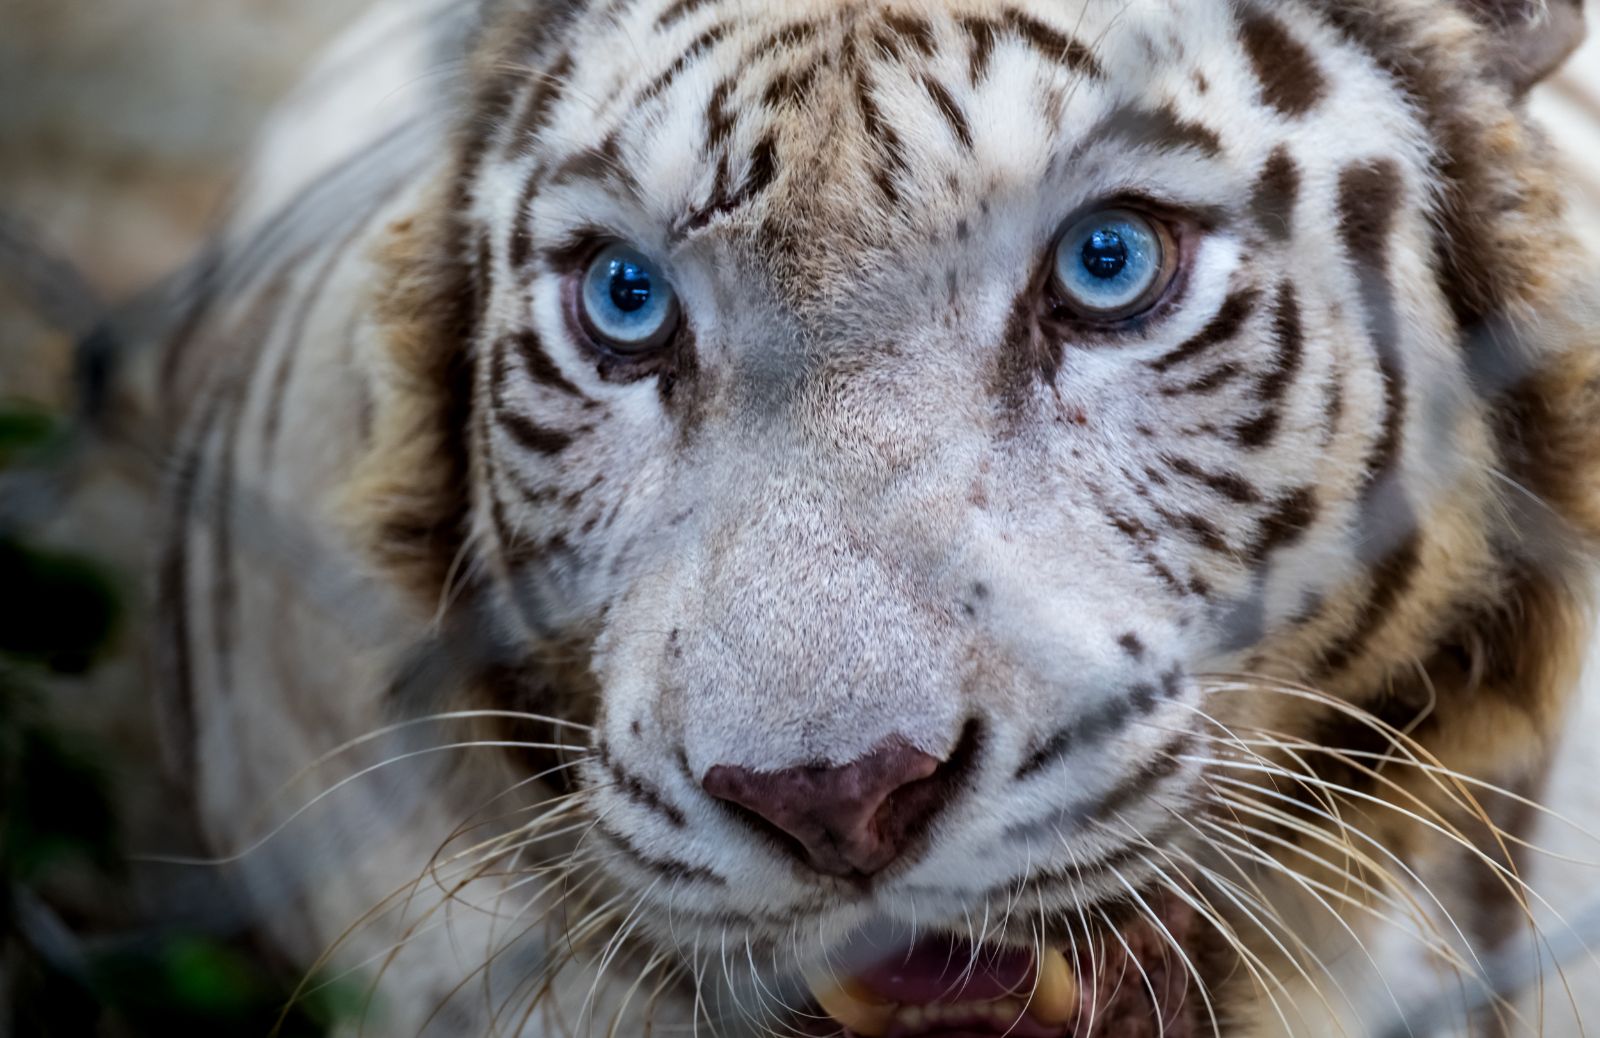 La tigre bianca: tutto su cuccioli, habitat e origini